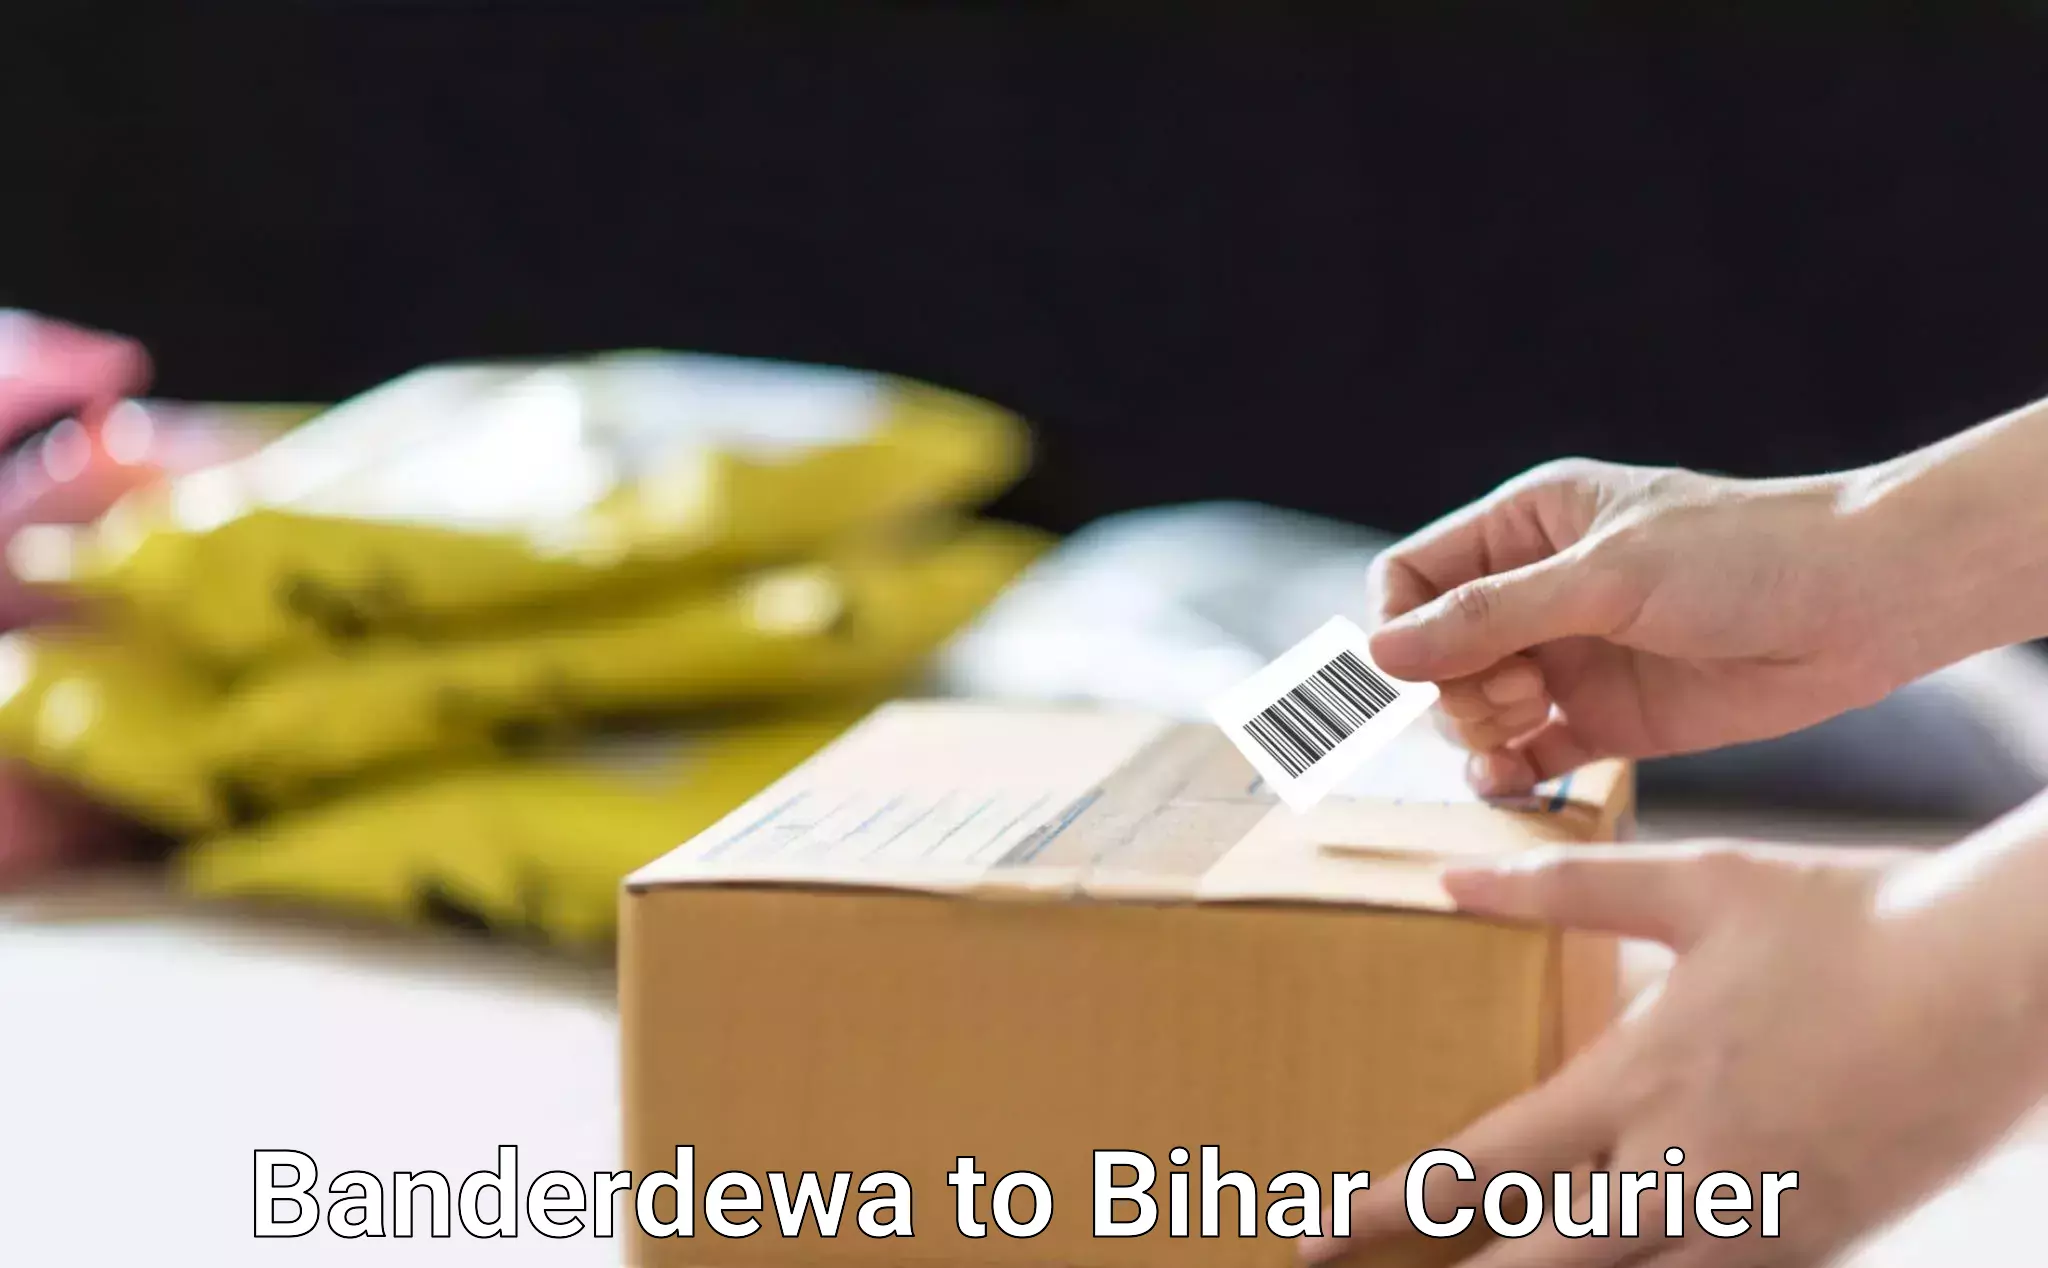 Global shipping networks Banderdewa to Bihar